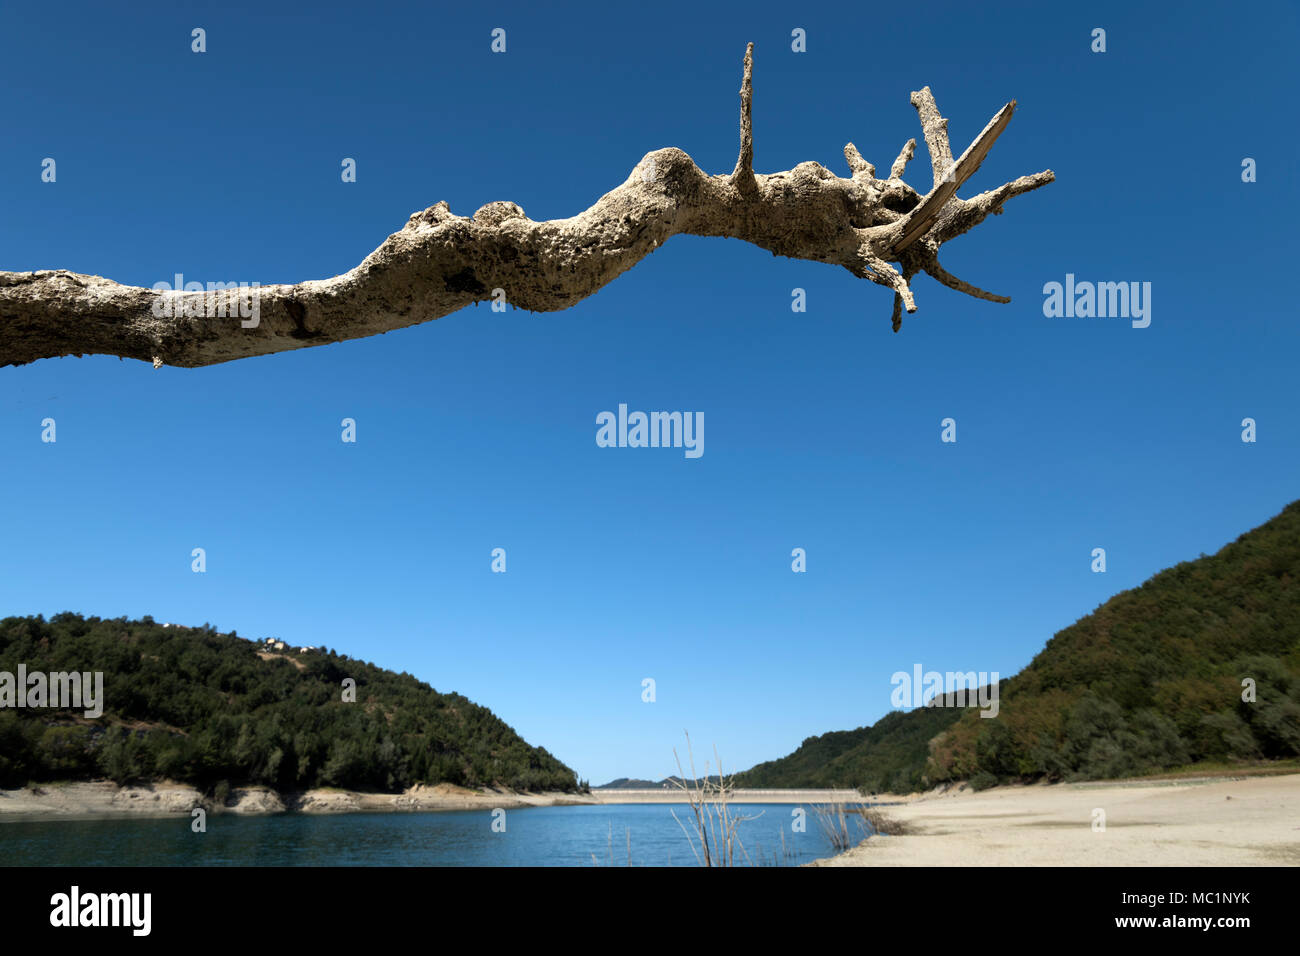 El lago de rama de árbol Foto de stock